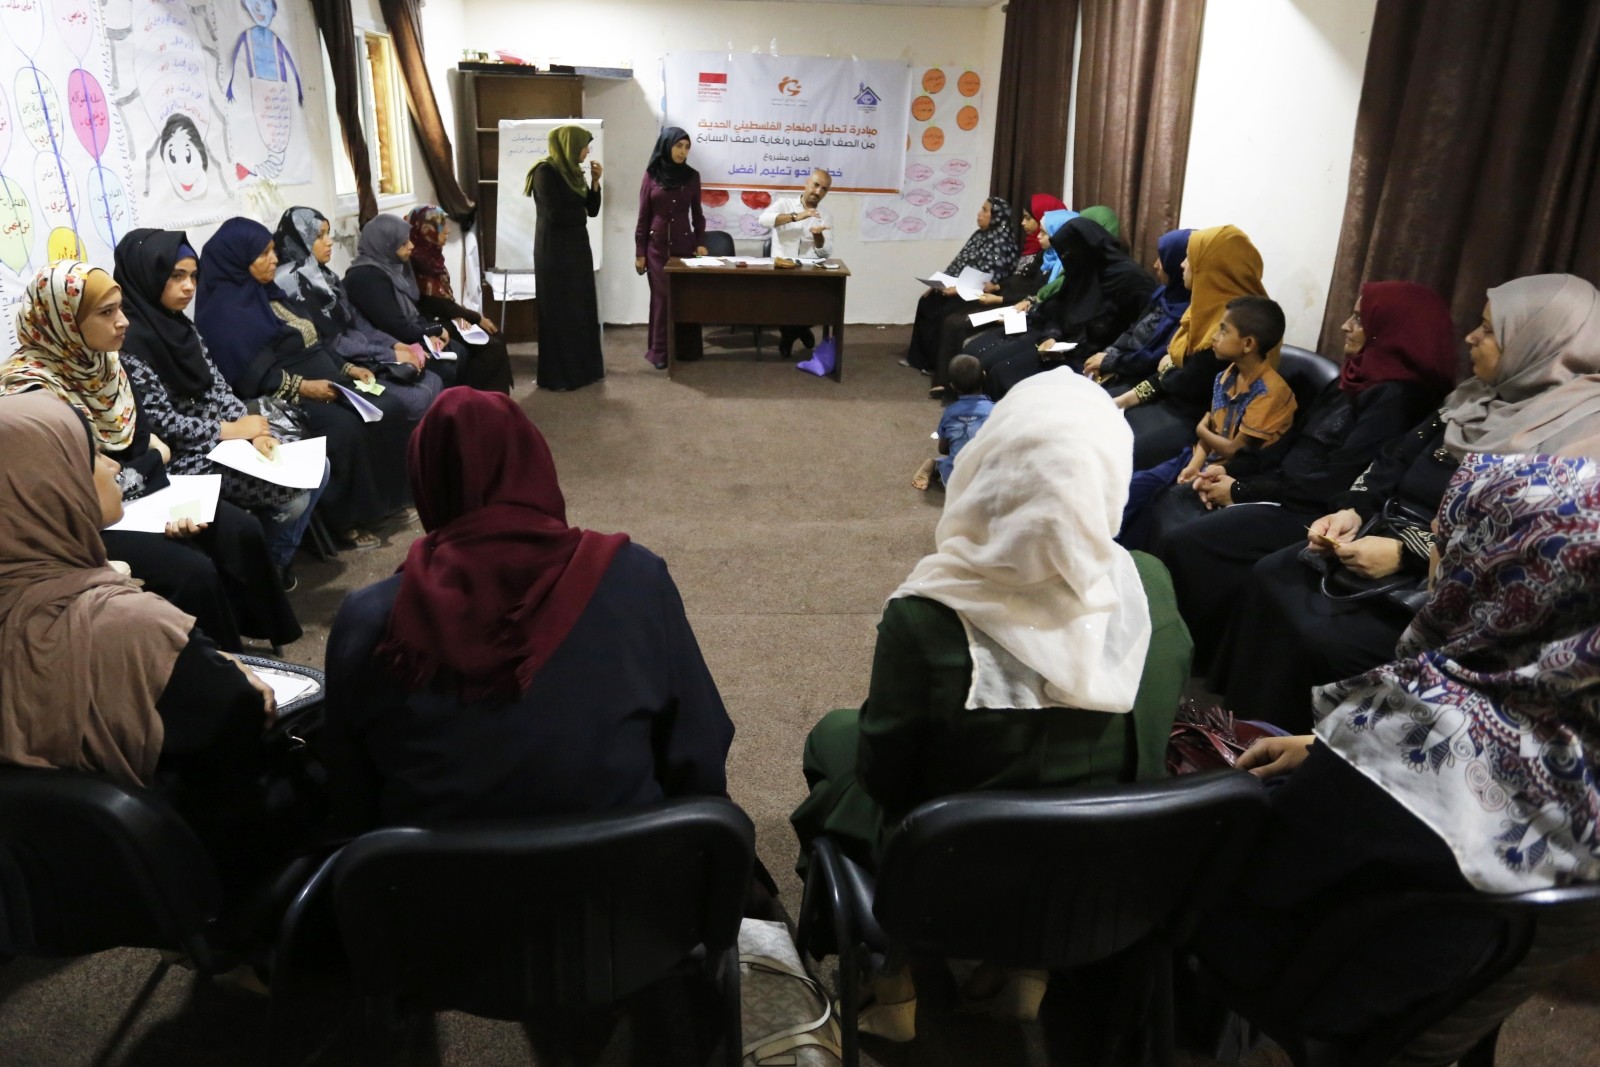  مركز إبداع المعلم ينفذ مبادرة تحليل المنهاج الفلسطيني الجديد